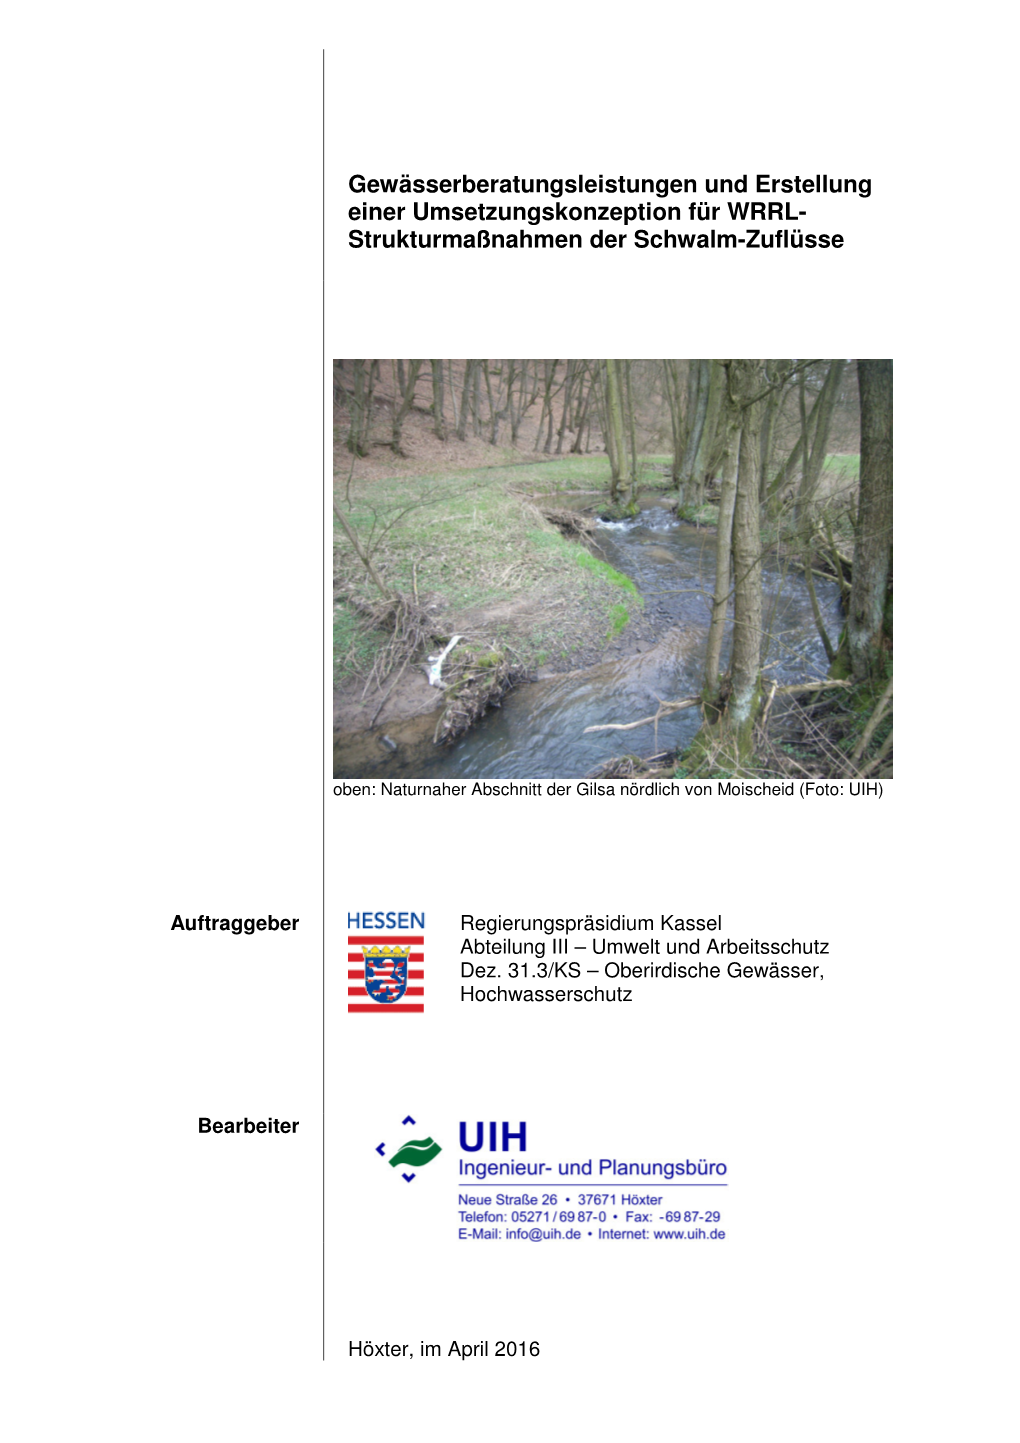 Gewässerberatungsleistungen Und Erstellung Einer Umsetzungskonzeption Für WRRL- Strukturmaßnahmen Der Schwalm-Zuflüsse